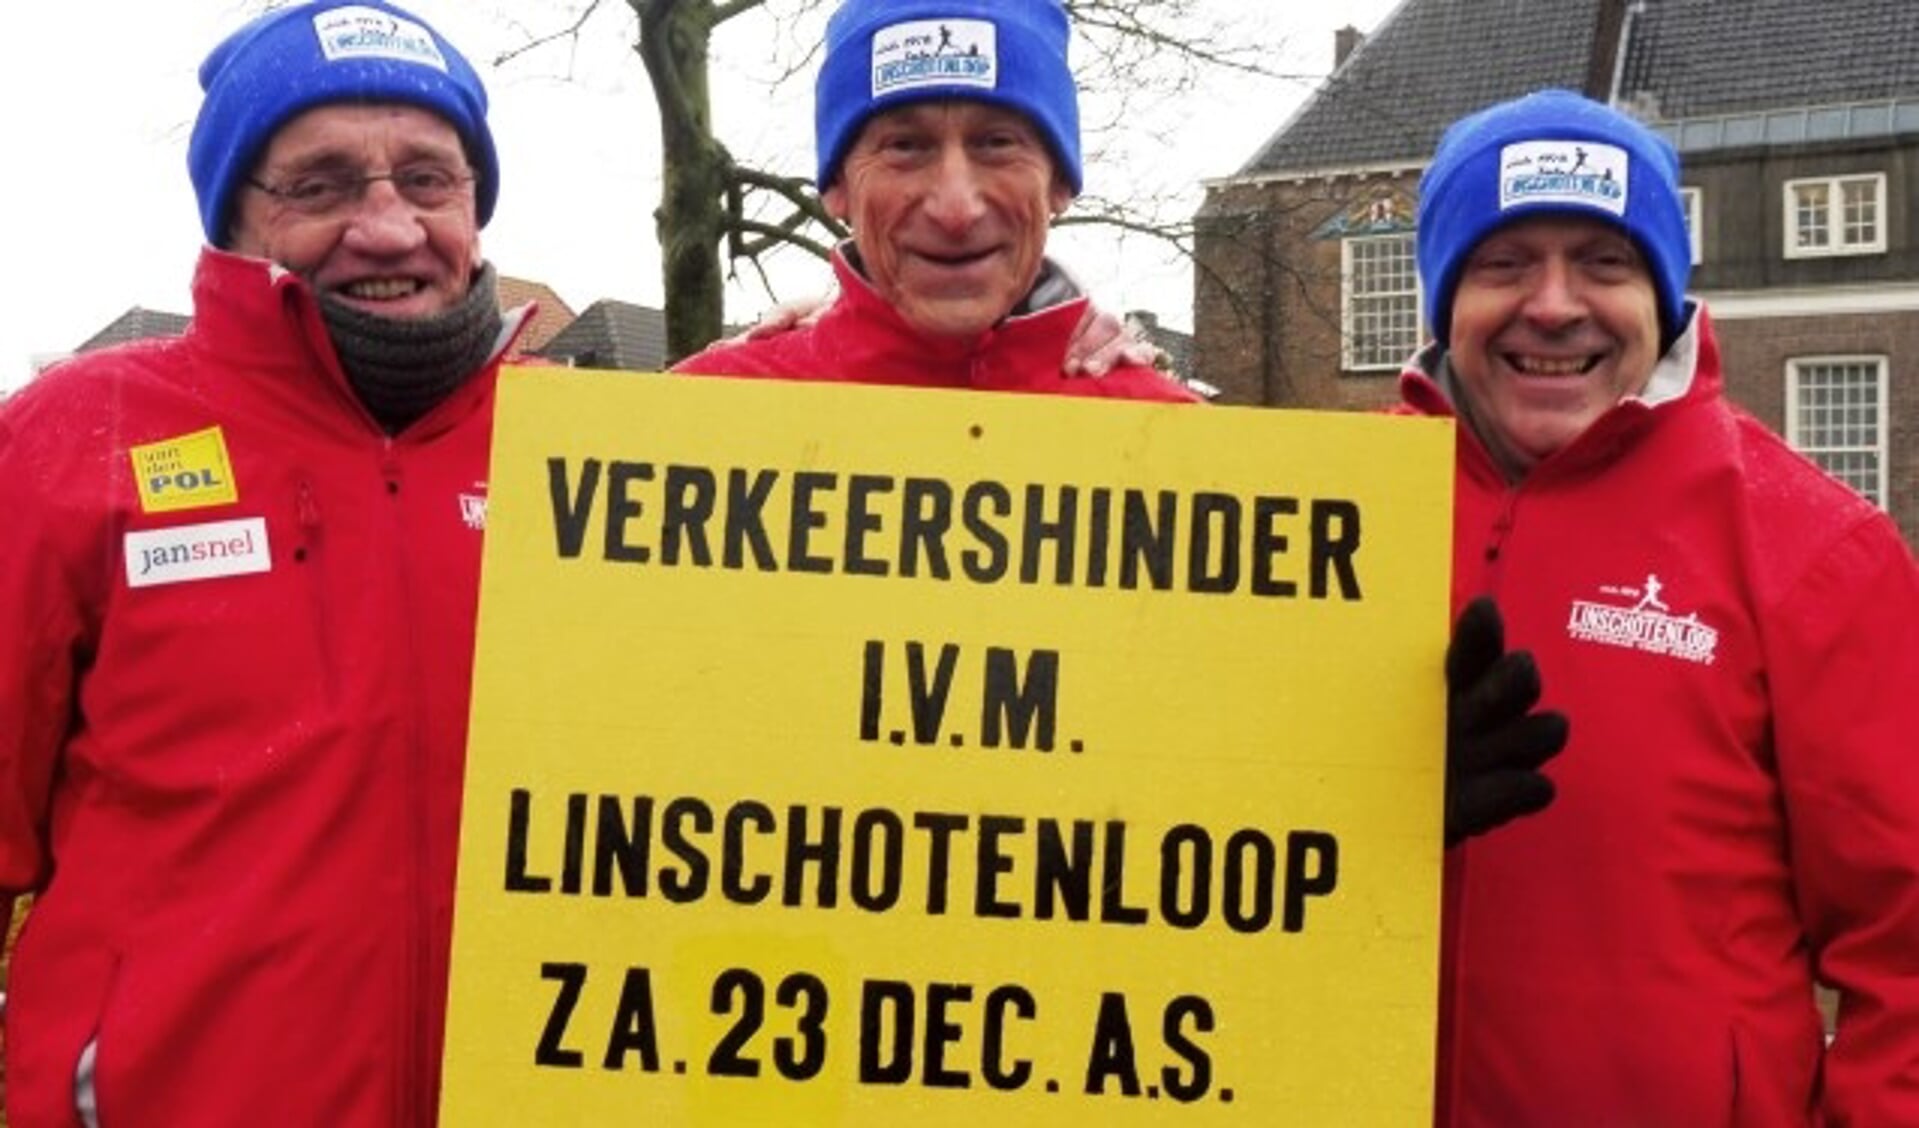 Niet alleen een Linschotense aangelegenheid. “De organisatie van de Linschotenloop staat nooit stil”, aldus de Montfoorters (v.l.n.r.) Piet Brand, Nico Pauw en Marius Jonkers. (Foto: Janneke Severs-Hilgeman)